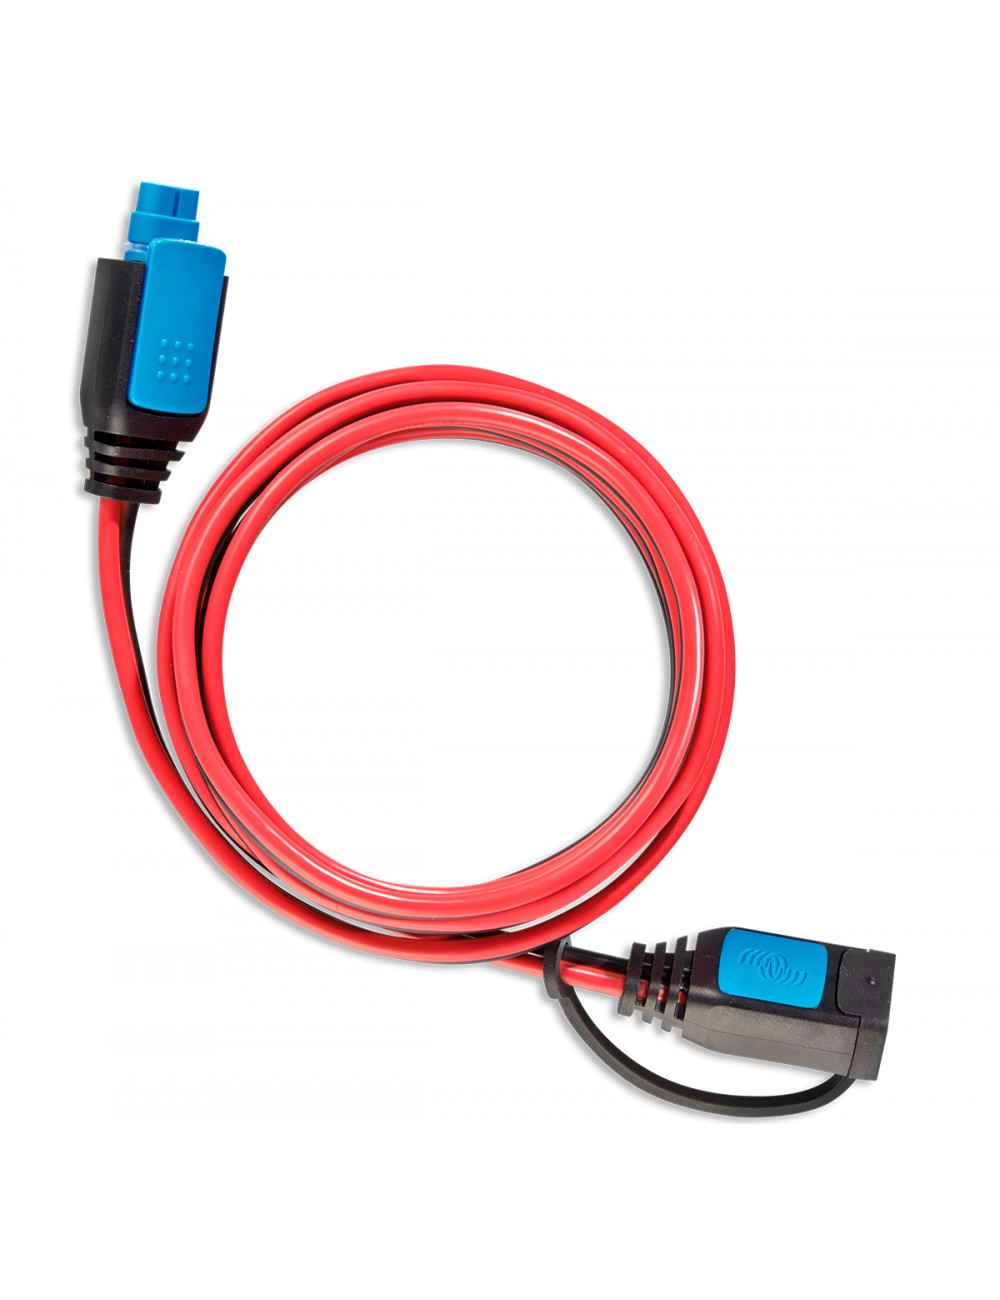 Cable alargadera de 2m con conector CC para cargadores Blue Smart IP65 de Victron - BPC900200014 -  - 8719076040132 - 1